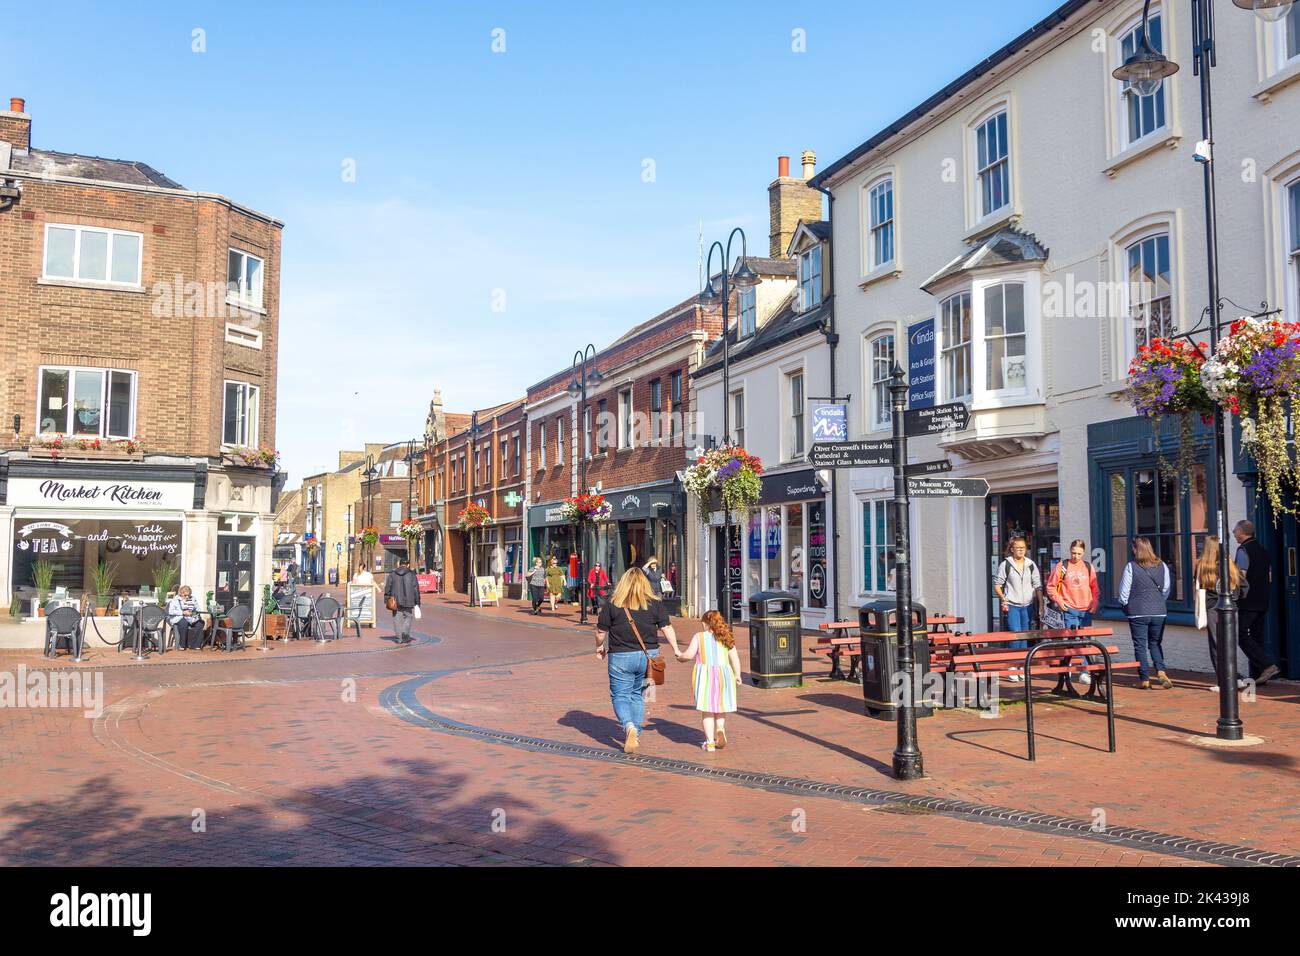 Market Place, Ely, Cambridgeshire, England, United Kingdom Stock Photo